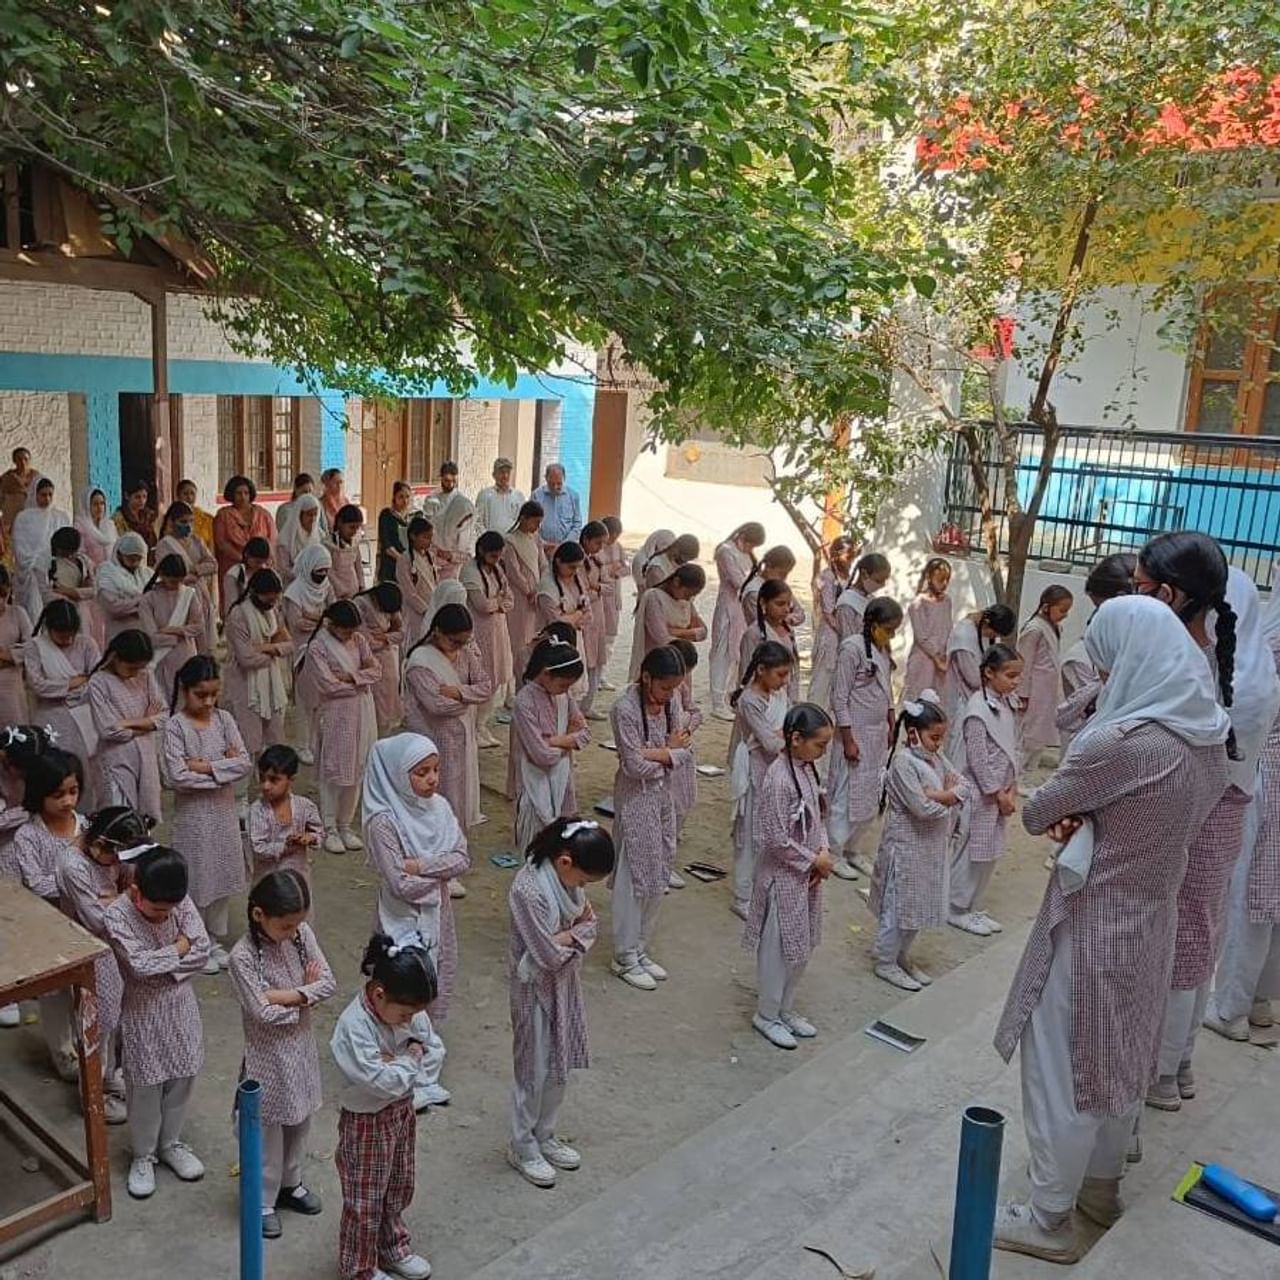 जम्मू-काश्मीरमधील सर्व शाळांनी गुरुवारी शिक्षिका रजनी बाला यांना श्रद्धांजली वाहिली. शिक्षिका रजनी बाला यांच्या स्मृतीप्रित्यर्थ सर्व शासकीय शाळांमध्ये विद्यार्थी व कर्मचाऱ्यांनी दोन मिनिटे मौन पाळत श्रद्धांजली आहे. 
